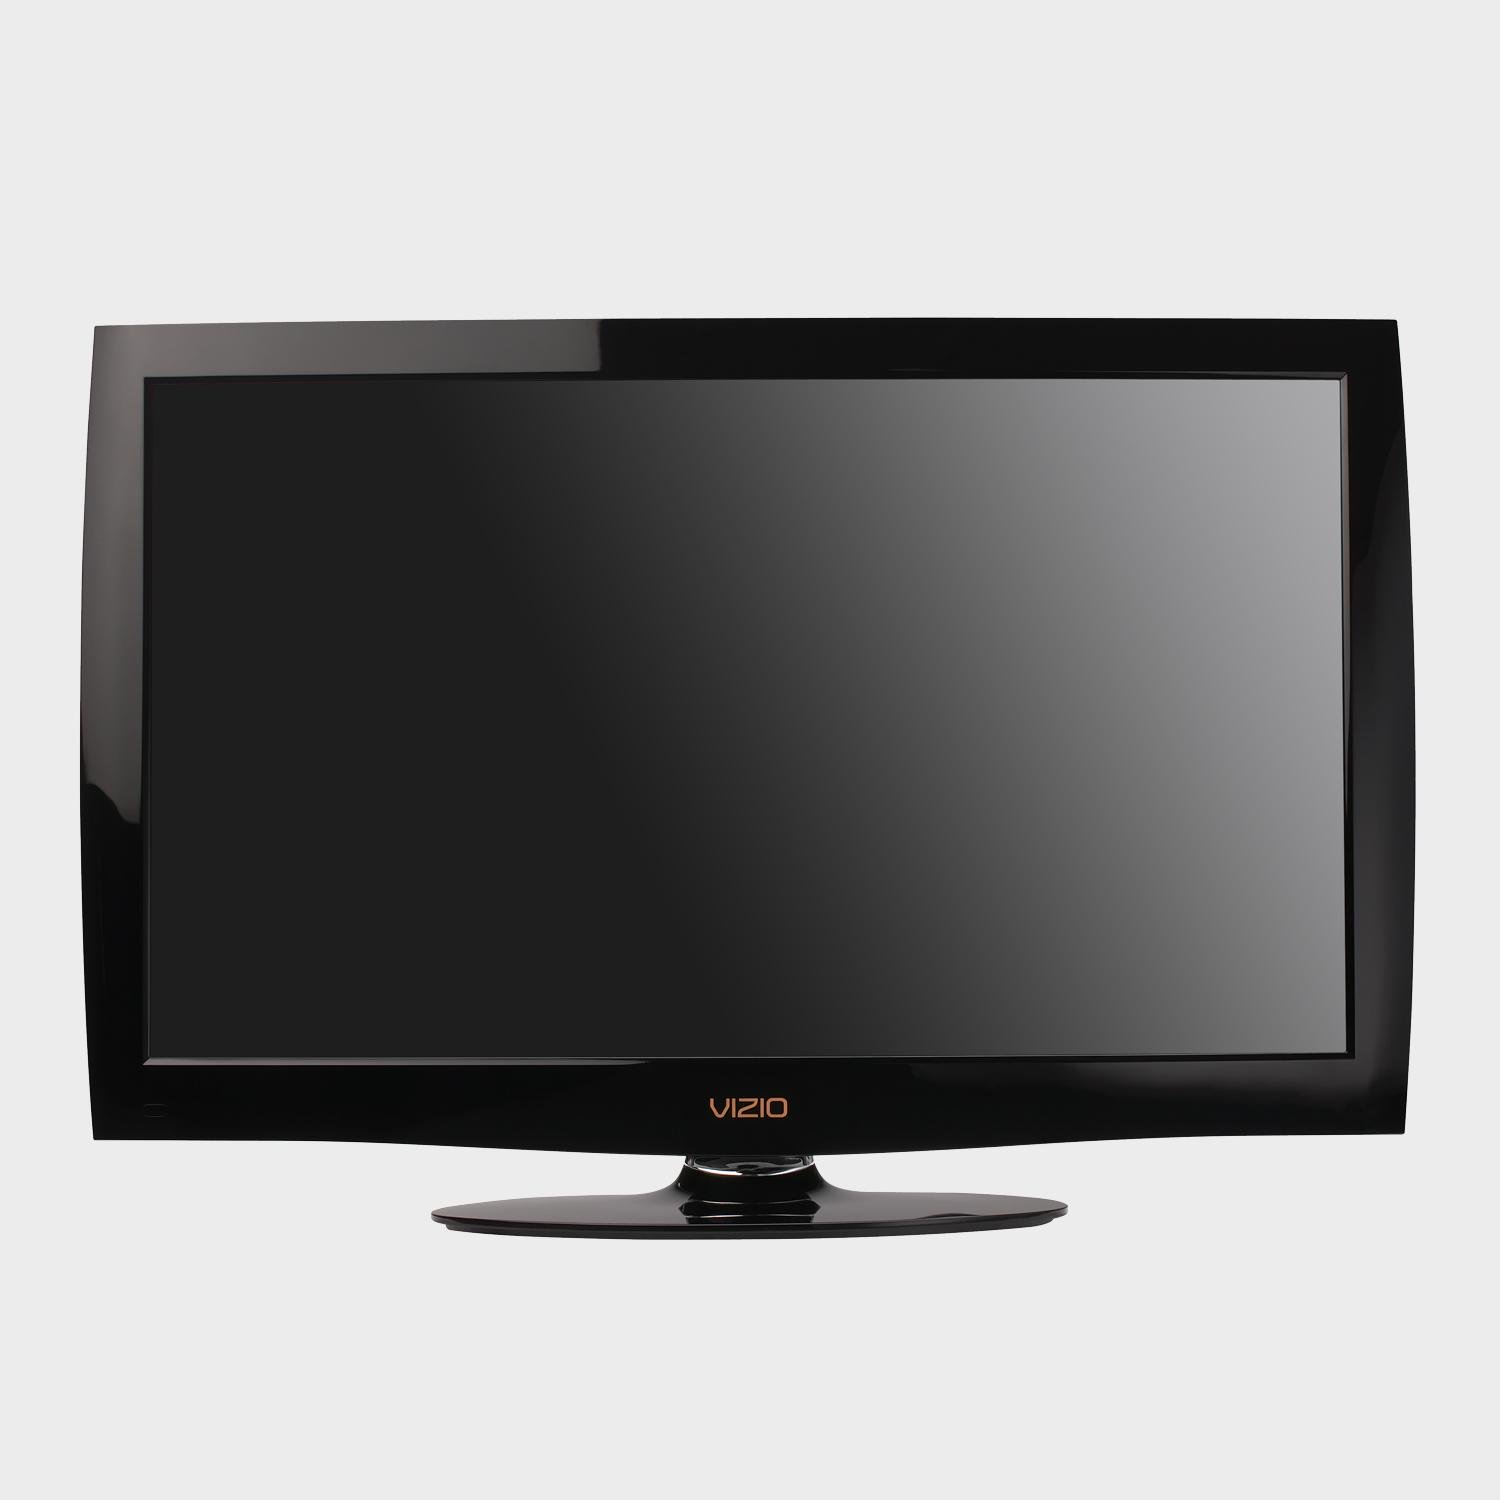 Телевизор 37 см. Телевизор Vizio. Телевизор Tip. HDTV LCD. Телевизор Vizio купить в России.